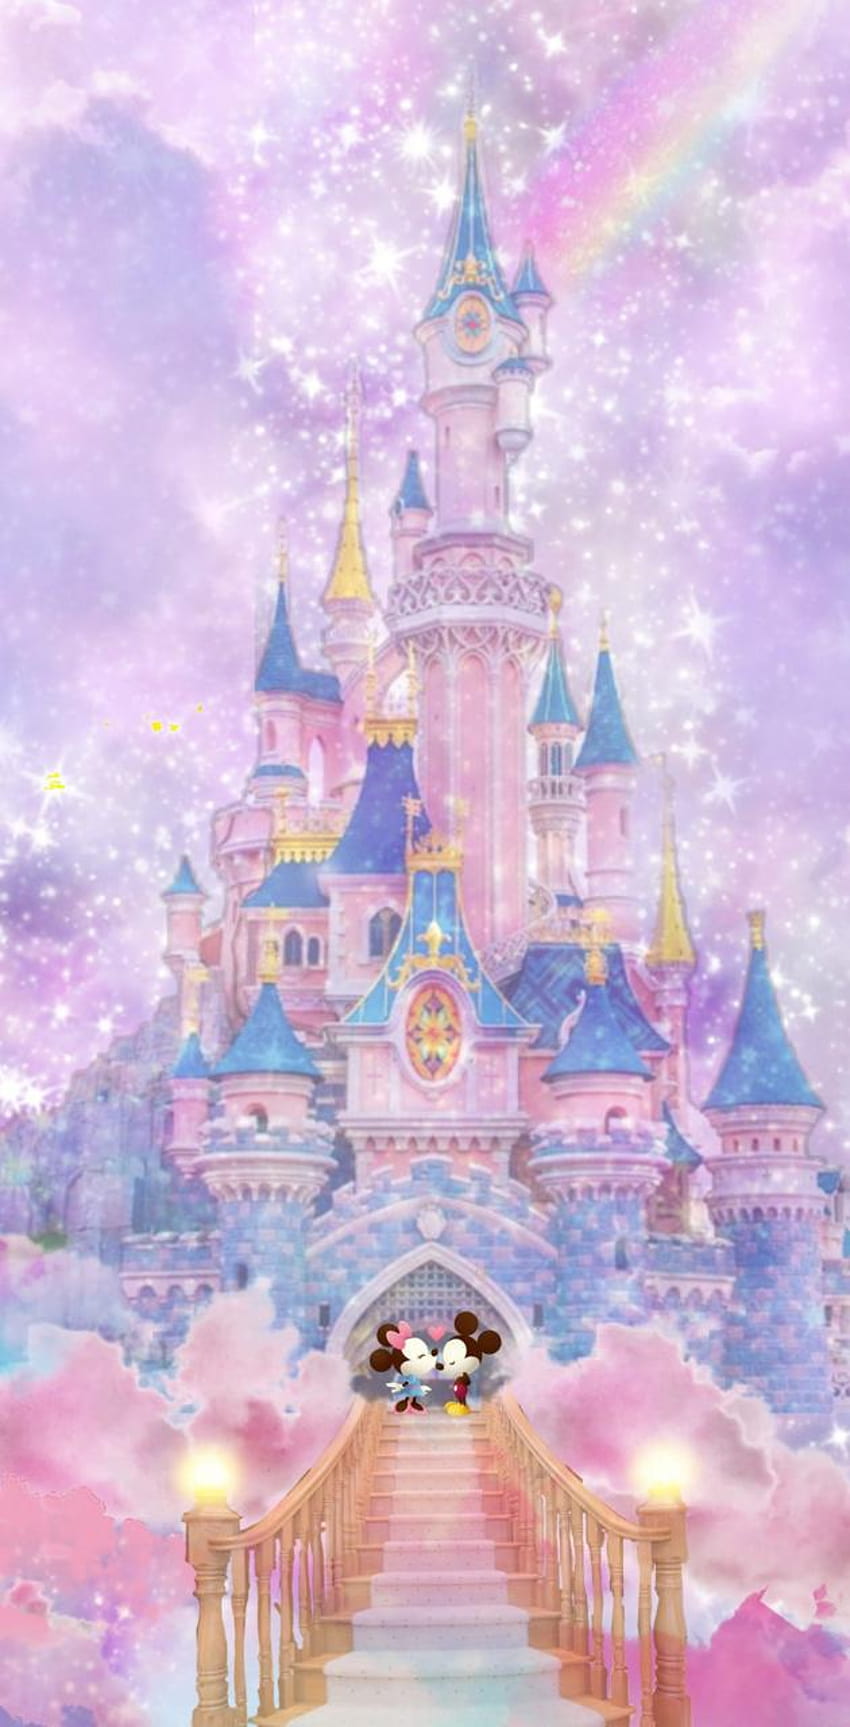 Zamek Disney firmy DisneyClarke, zamek Disneya na iPhone'a Tapeta na telefon HD